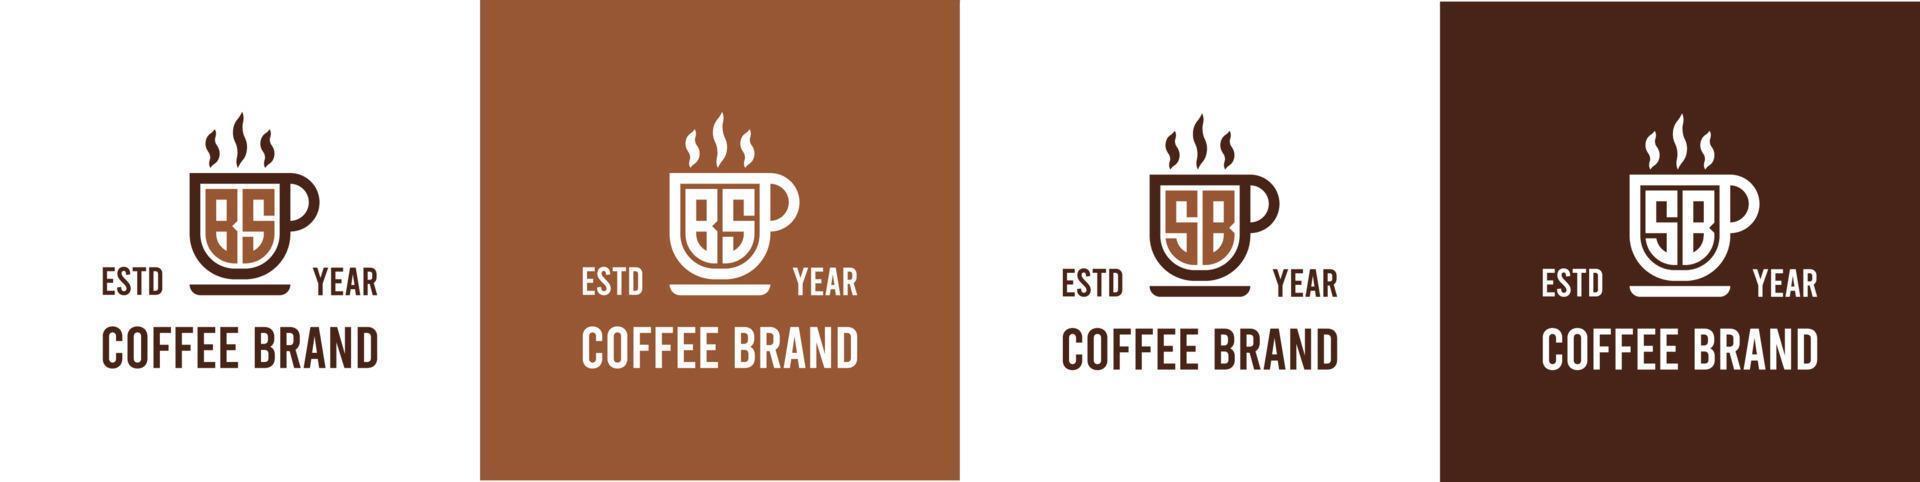 carta bs e sb café logotipo, adequado para qualquer o negócio relacionado para café, chá, ou de outros com bs ou sb iniciais. vetor